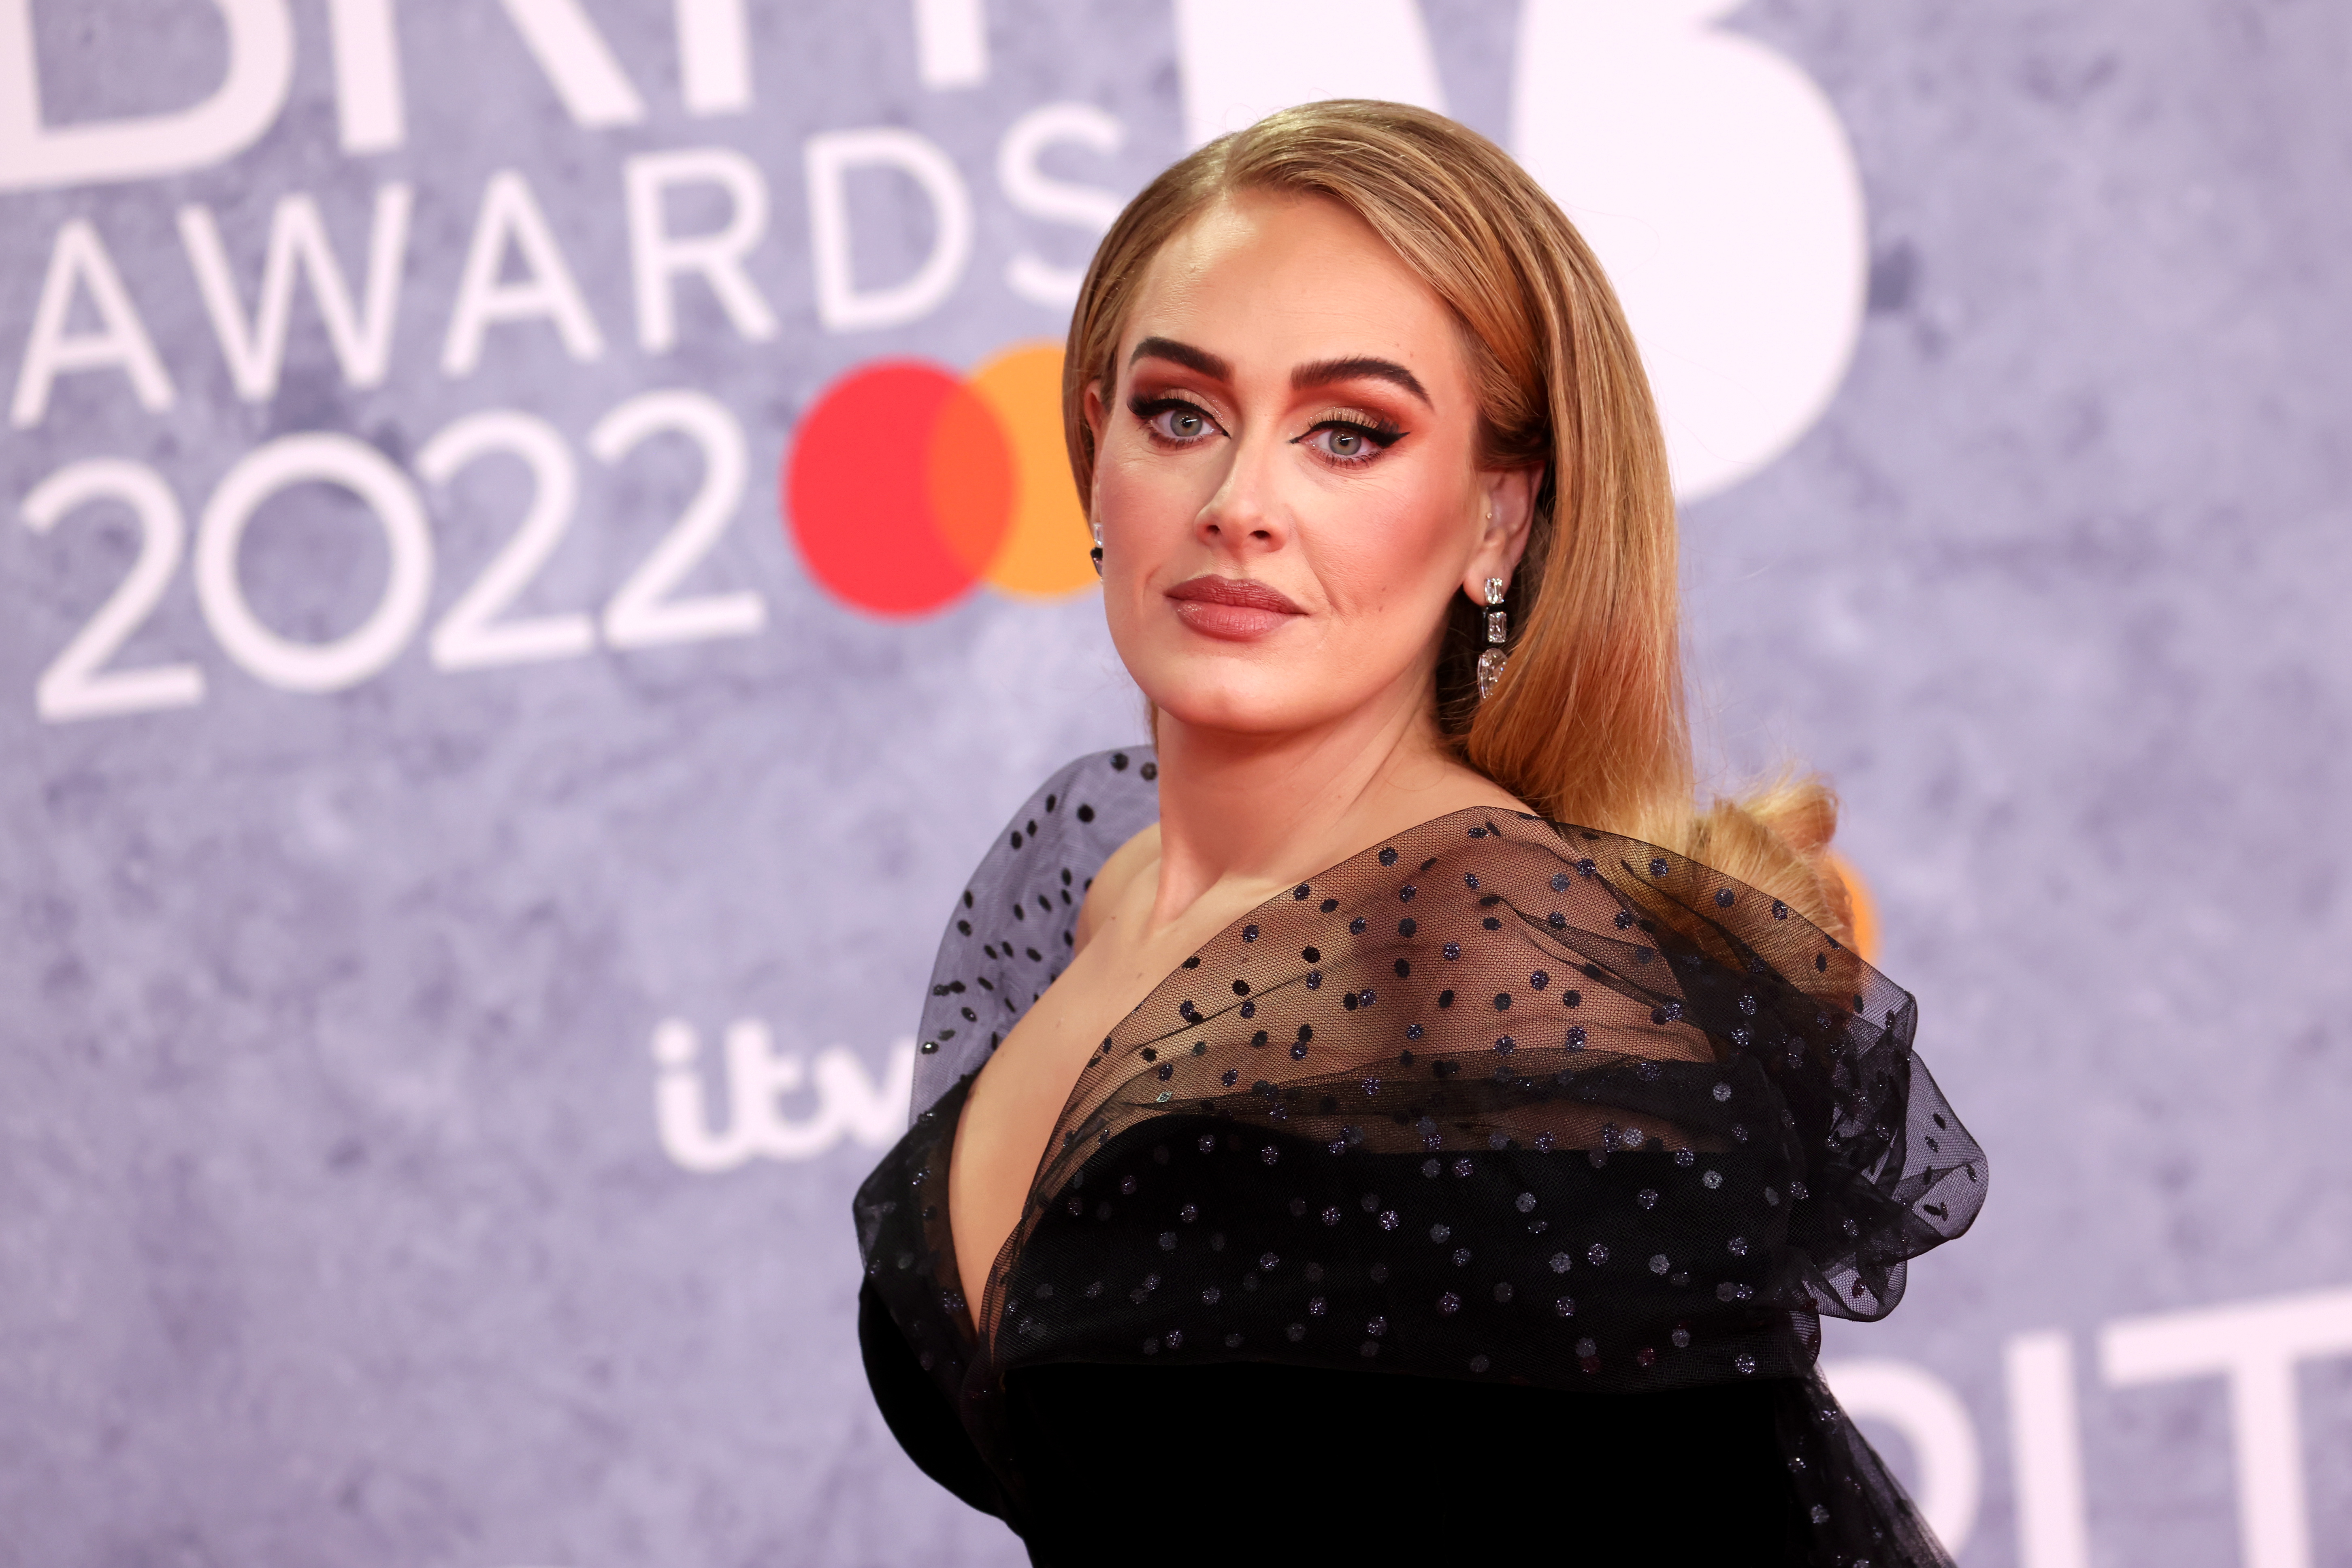 Adele reconoció que cancelar sus show en Las Vegas fue “el peor momento” de su carrera